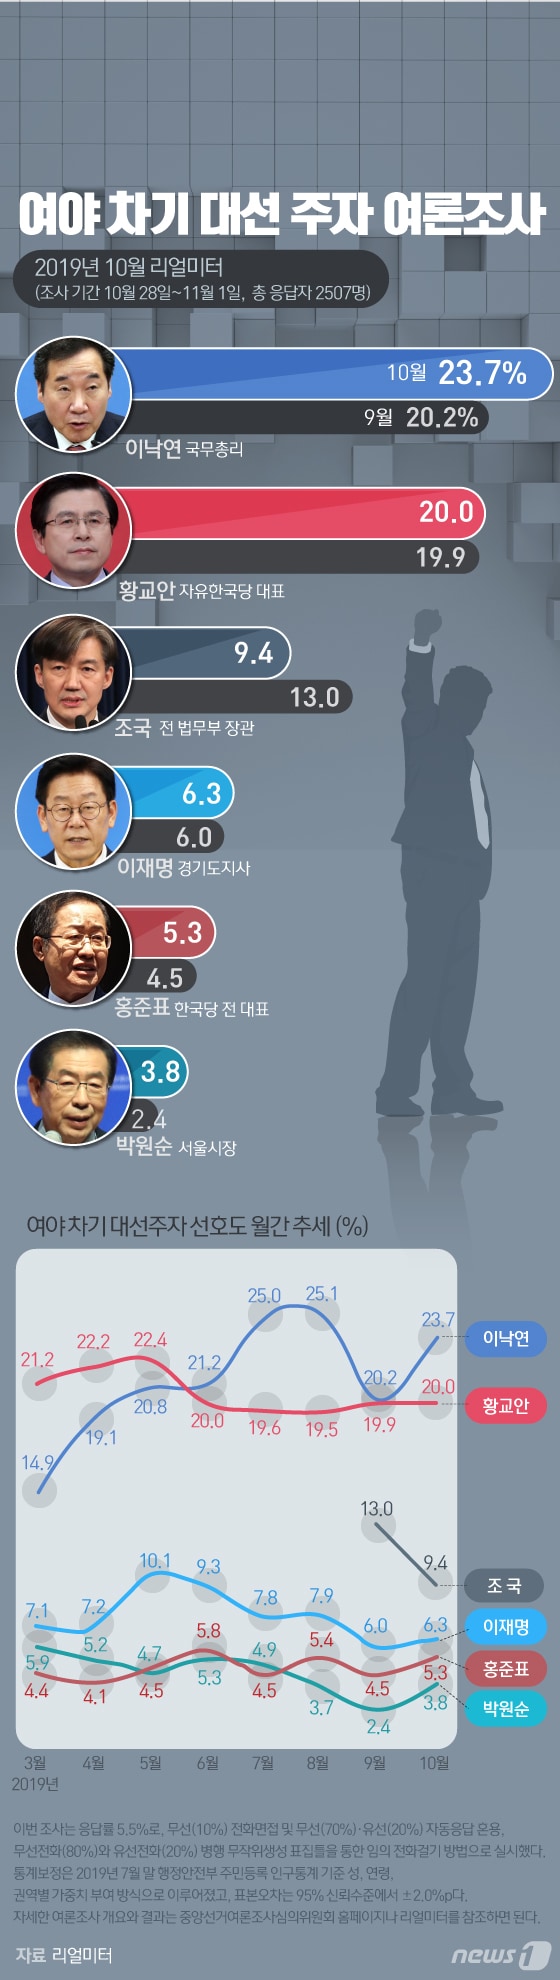 [그래픽뉴스] 차기 대선주자 선호도 조사